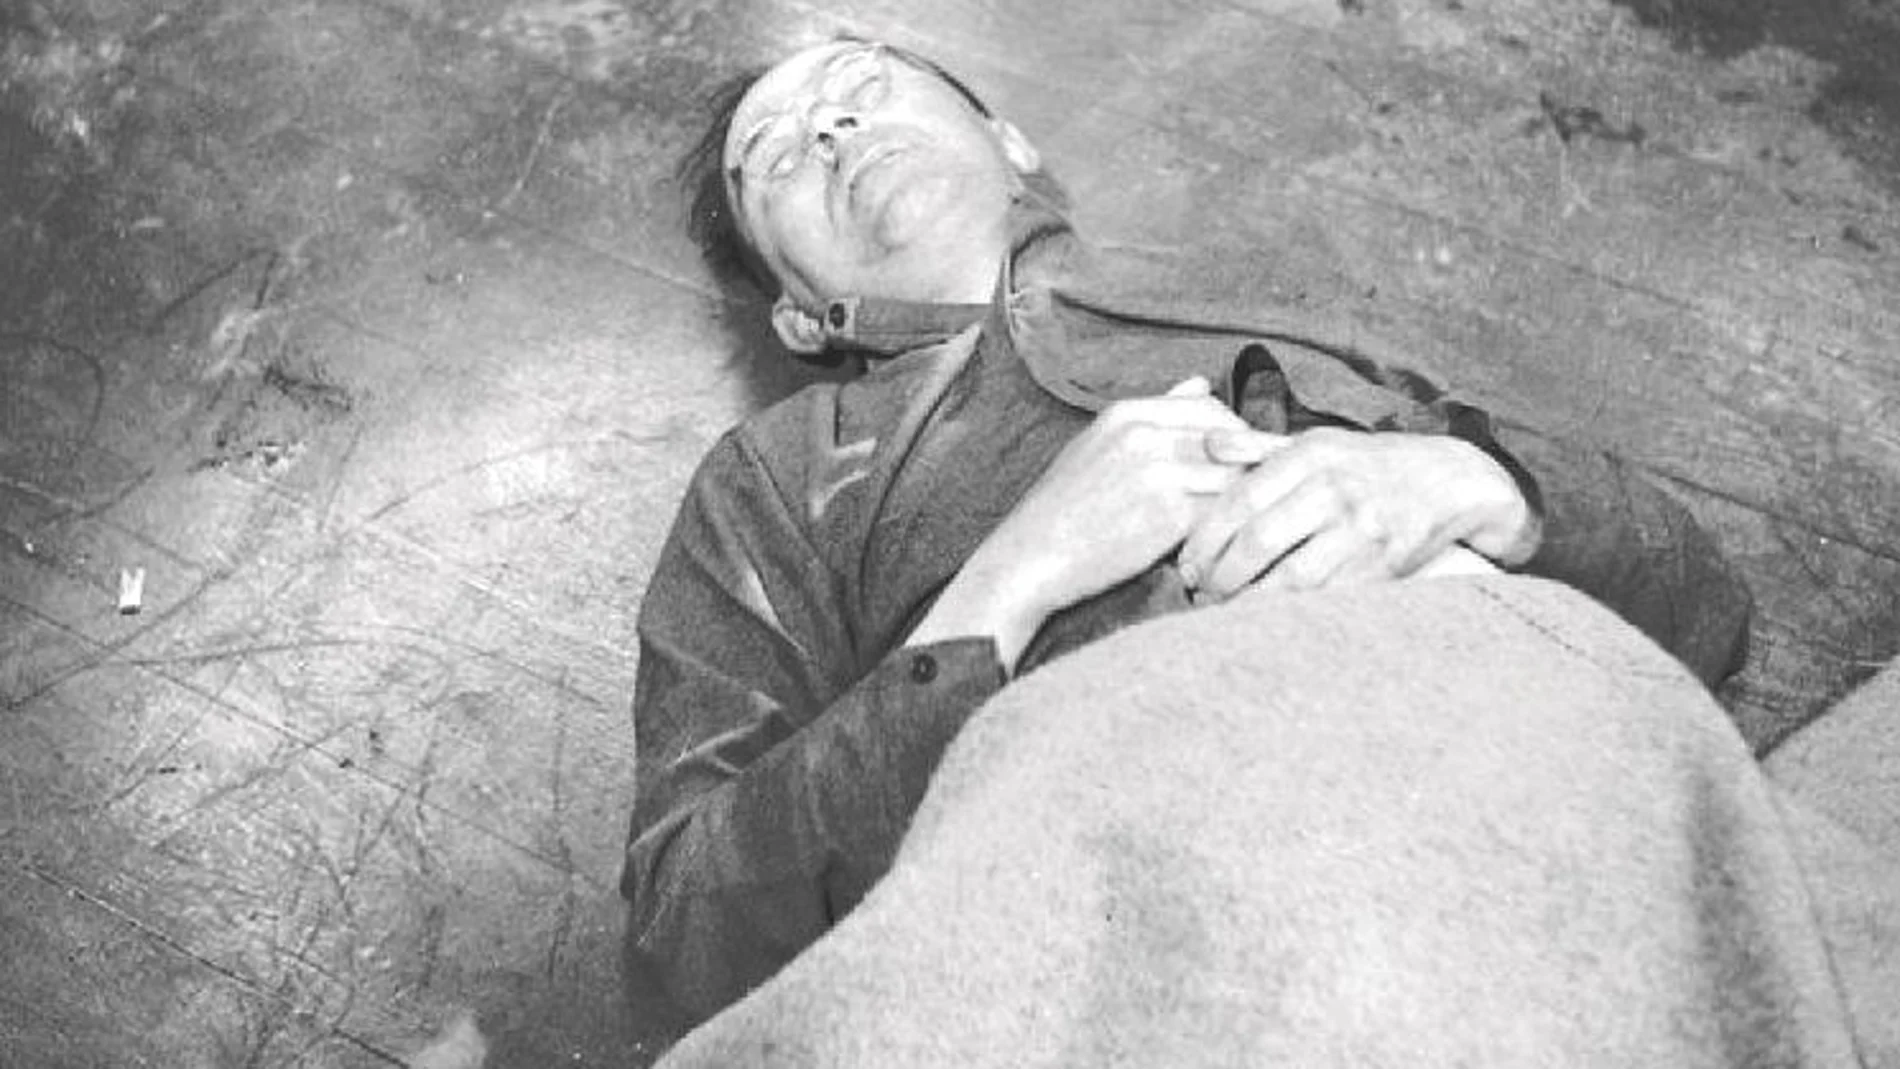 Cuerpo de Himmler después de su suicidio